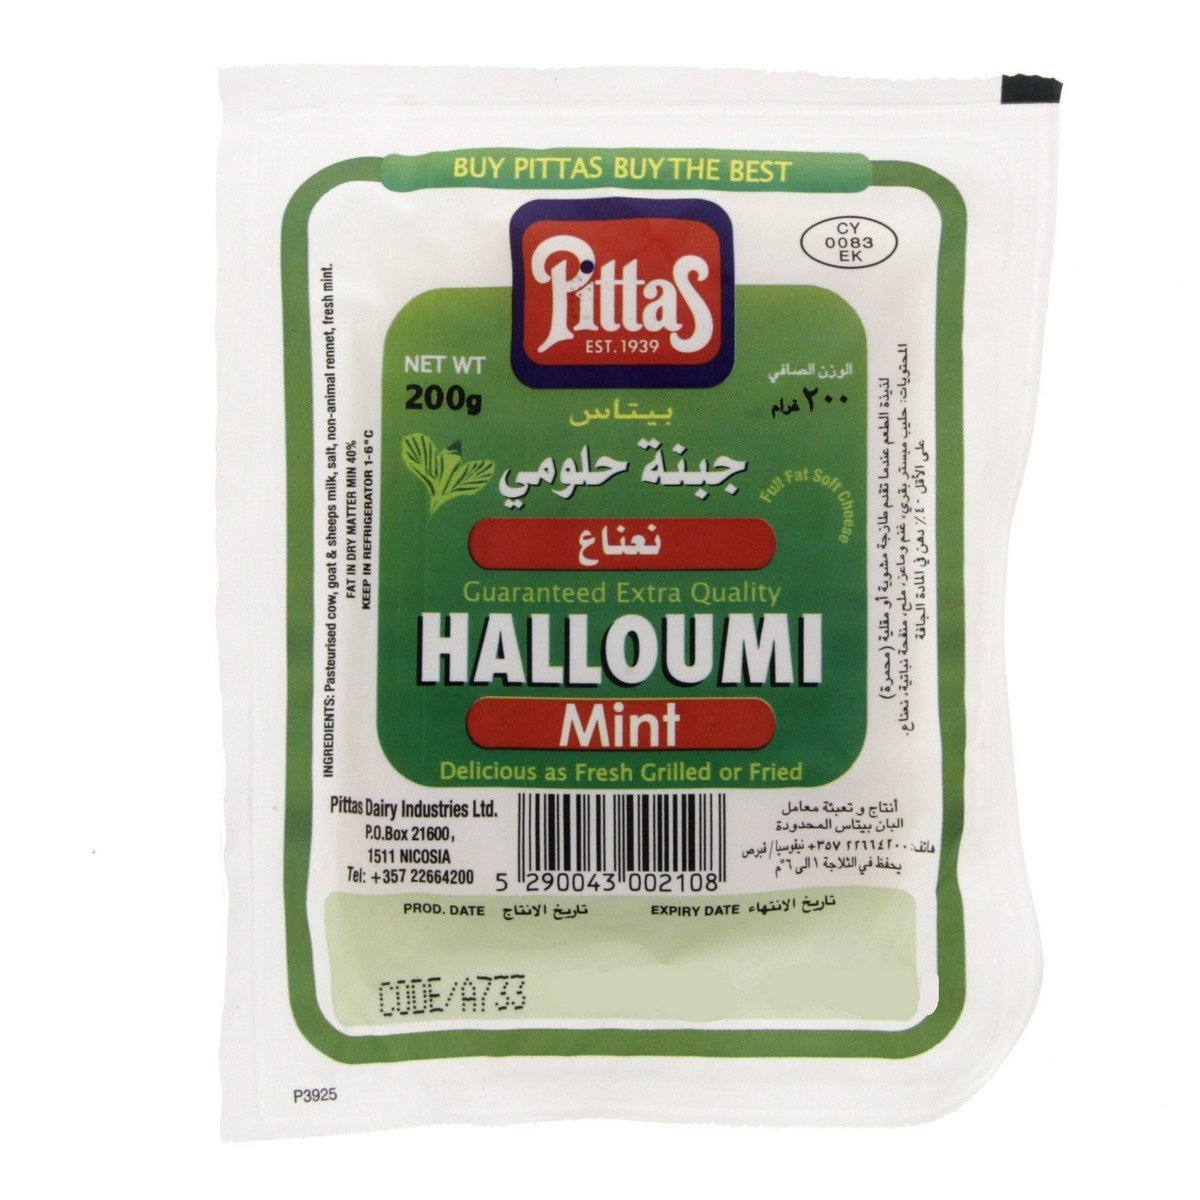 Pittas Halloumi Mint Cheese 200 g